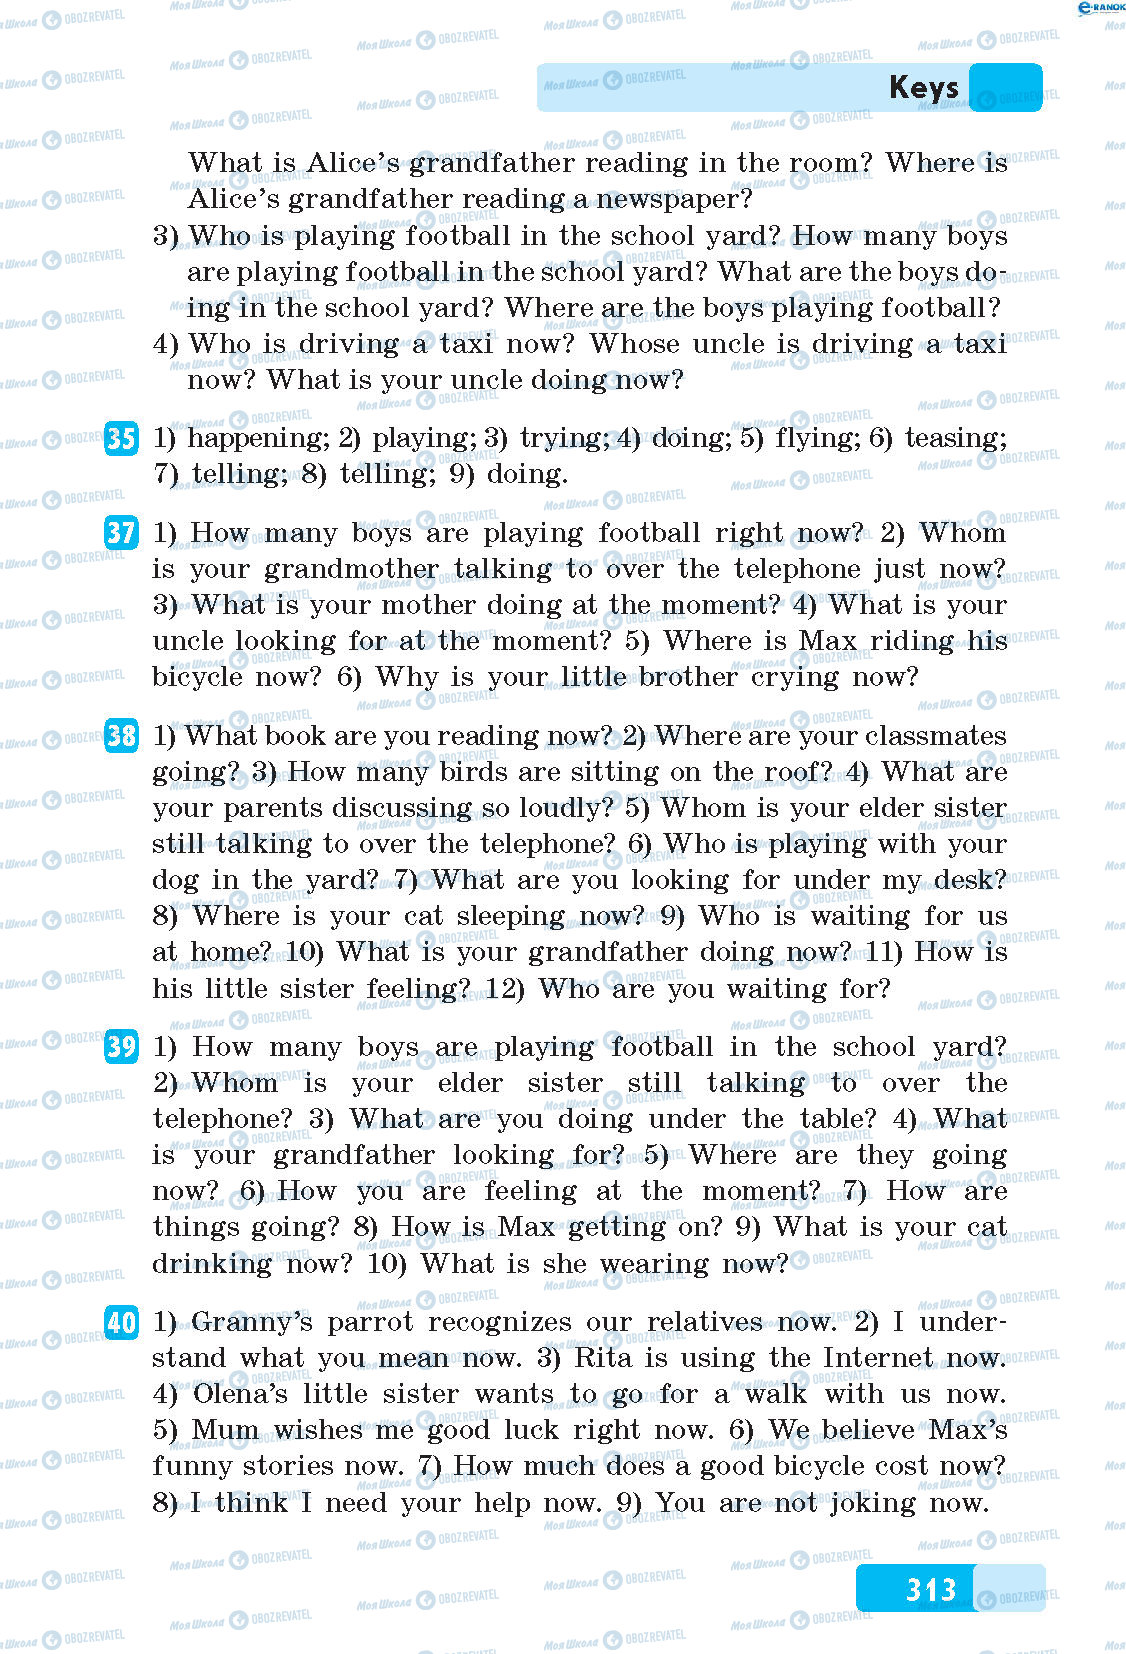 ГДЗ Английский язык 5 класс страница 35-40